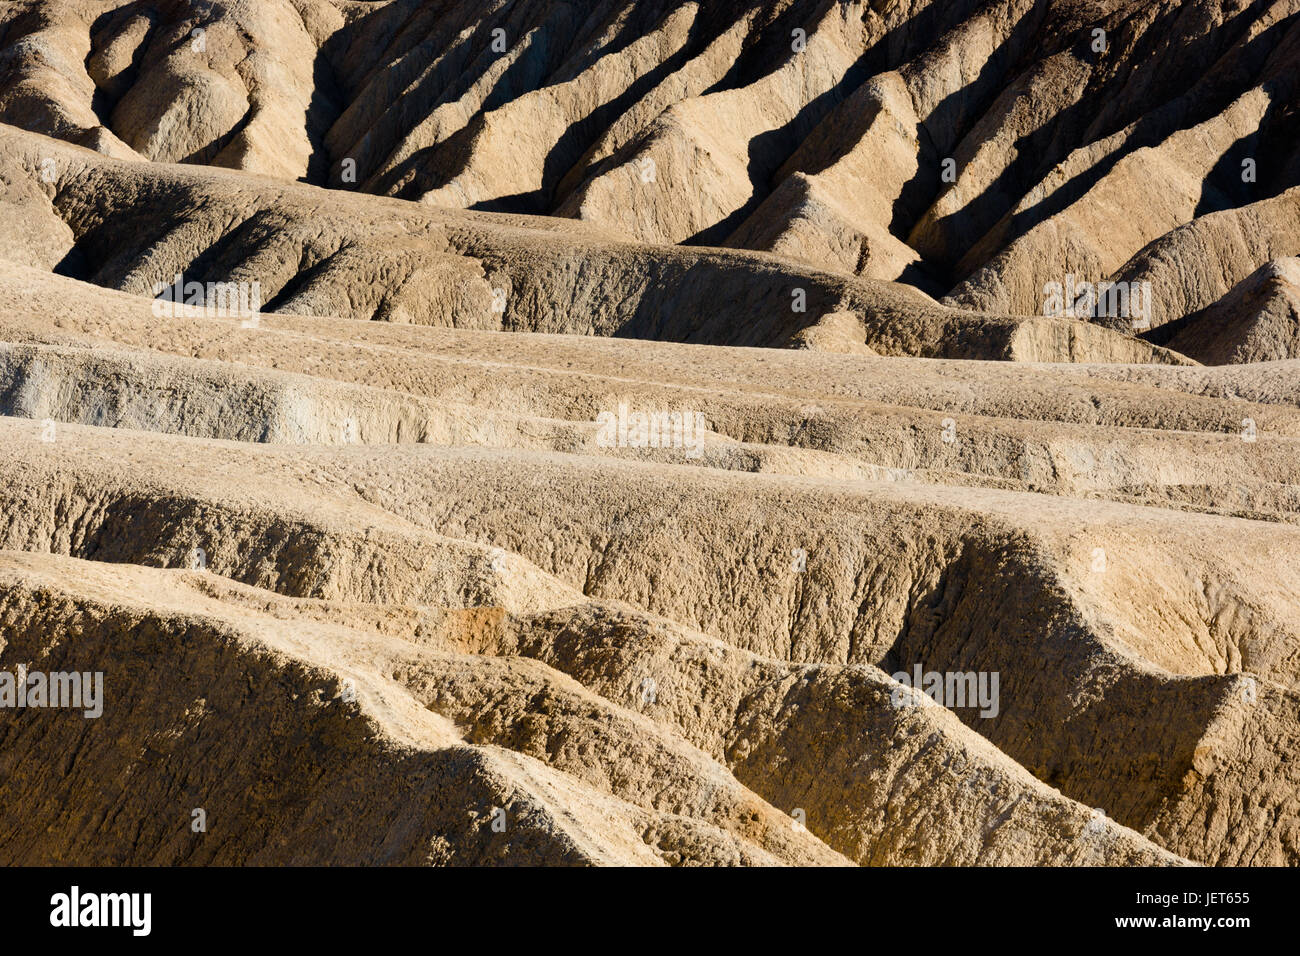 USA, Kalifornien, Death Valley ist ein Wüstental im Osten Kaliforniens. Es ist die niedrigste, trockenste und heißeste Gegend in Nordamerika. Zabriskie Point Ansicht. Stockfoto